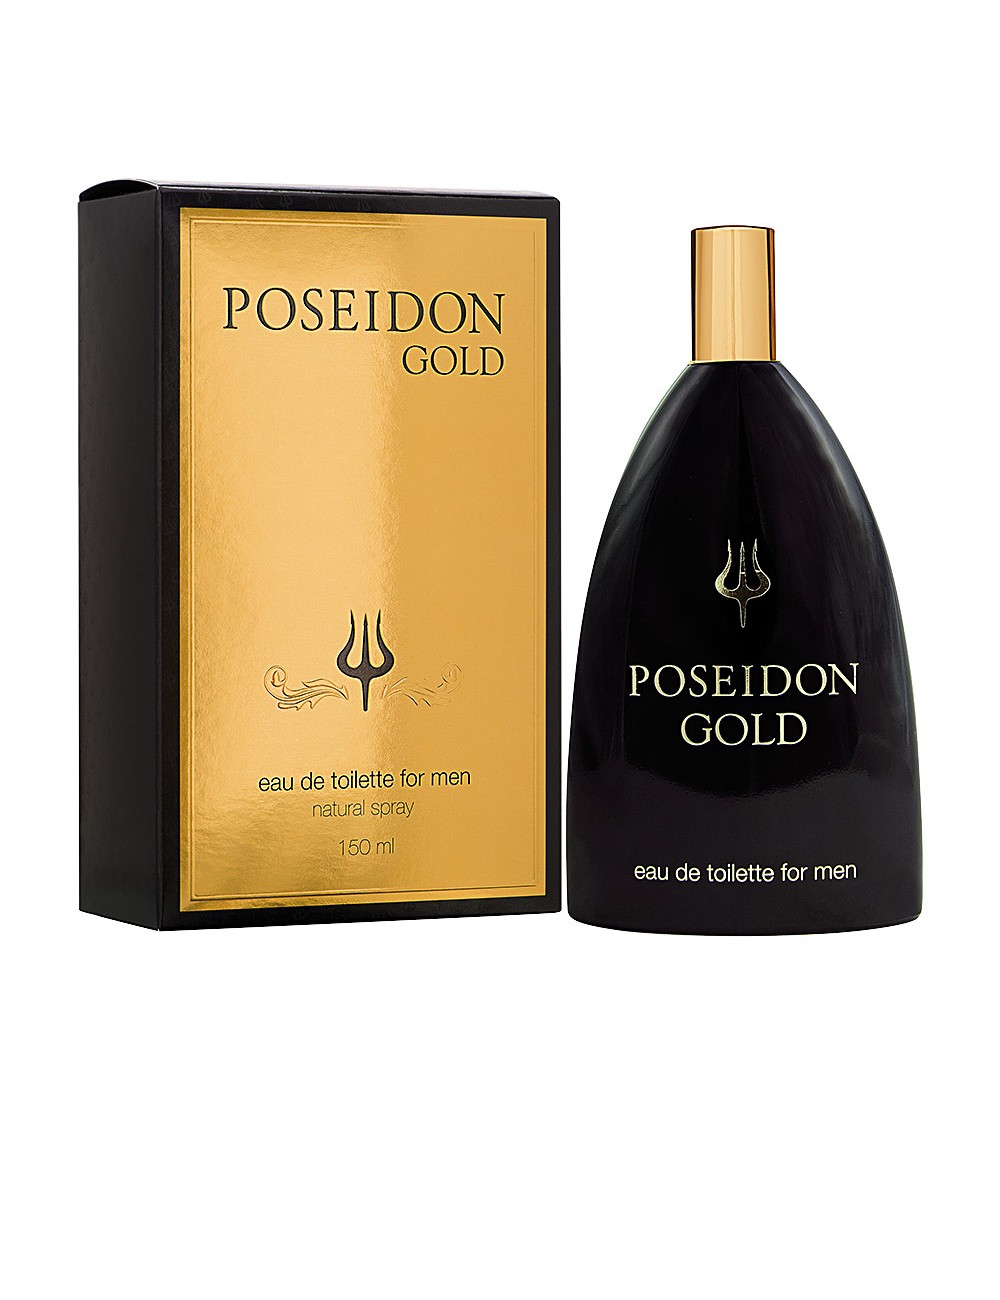 POSEIDON GOLD FOR MEN eau de toilette vaporisateur 150 ml